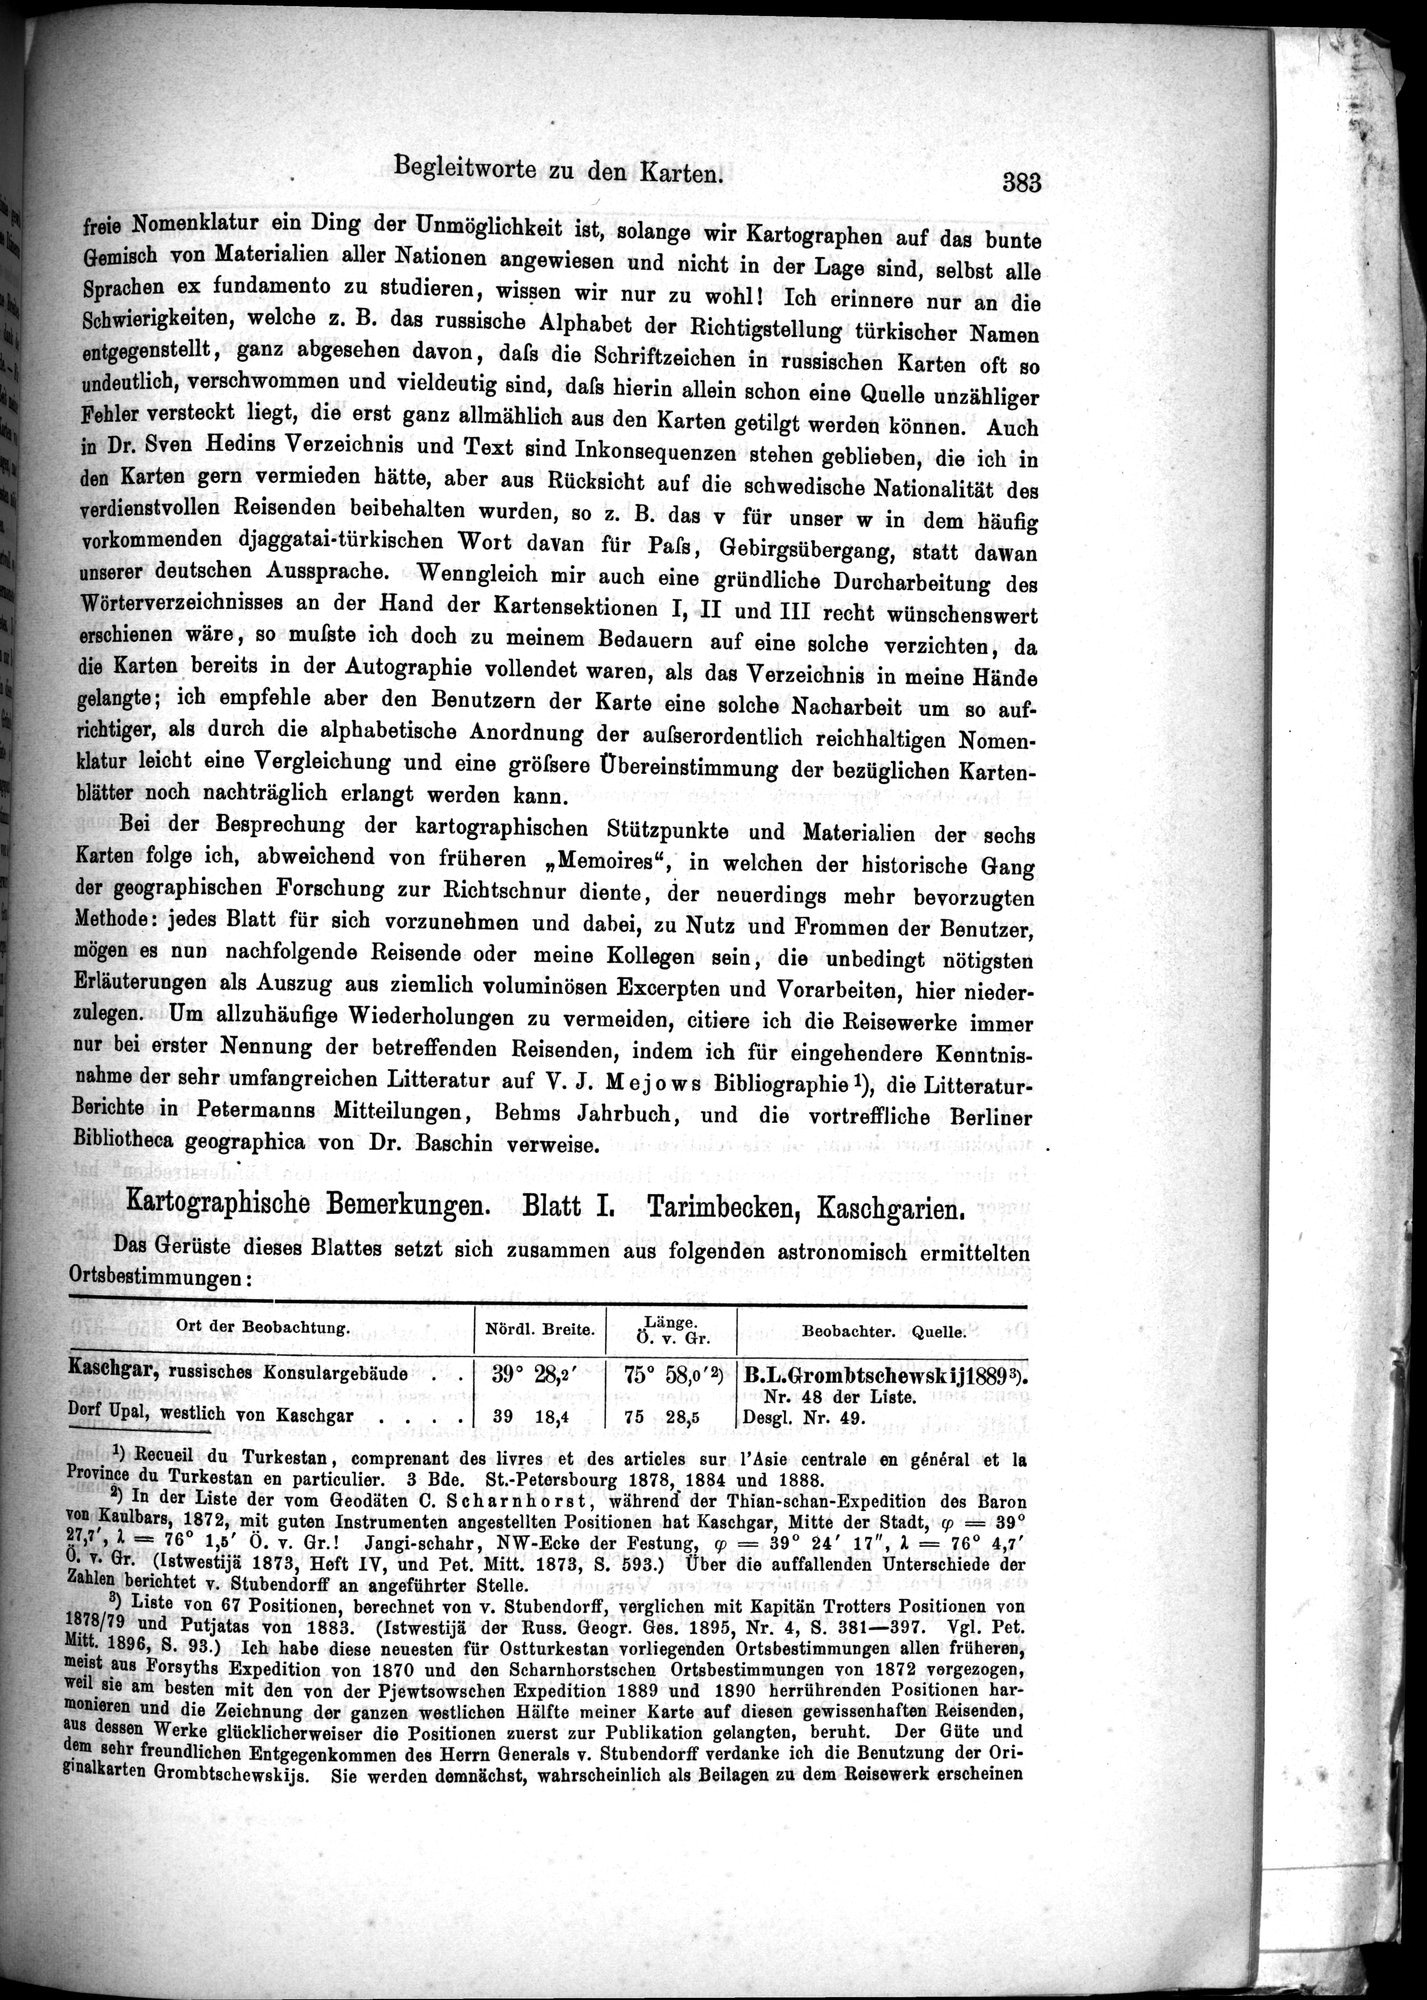 Die Geographische-Wissenschaftlichen Ergebnisse meiner Reisen in Zentralasien, 1894-1897 : vol.1 / Page 395 (Grayscale High Resolution Image)